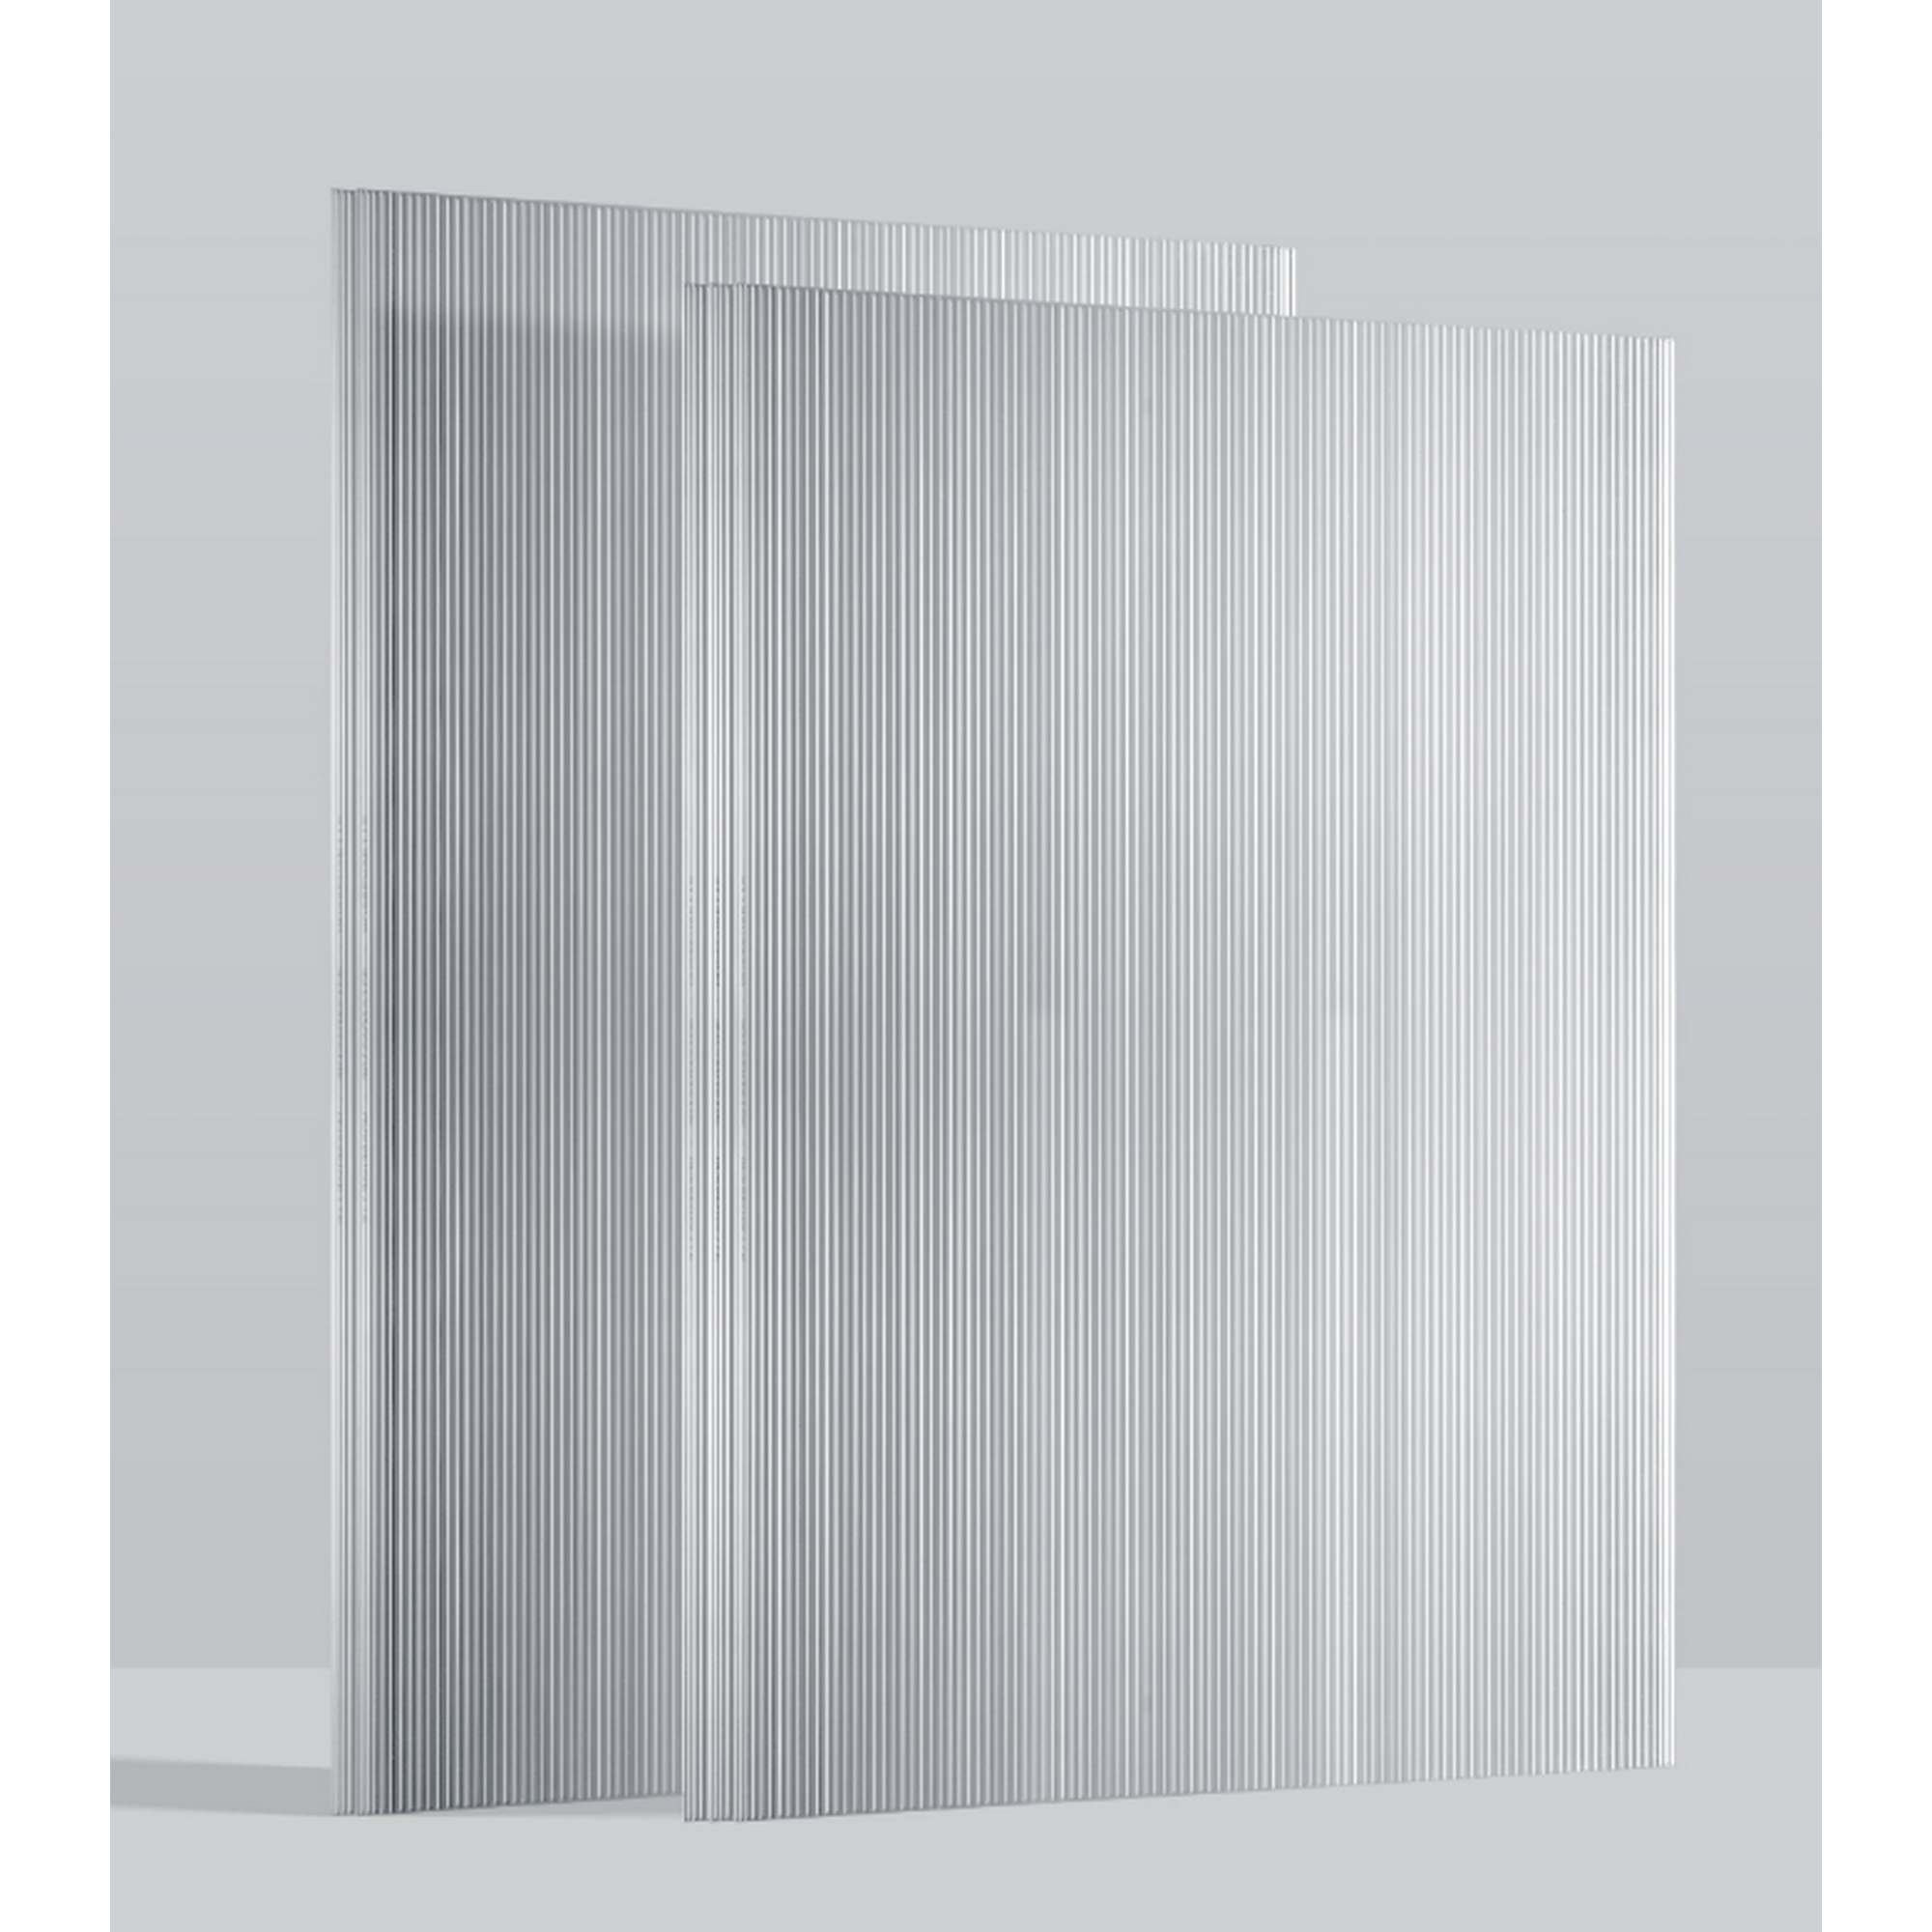 Hohlkammerplatten Gewächshaus 'Ergänzungsset 1' transparent 4 mm, 5-teilig + product picture